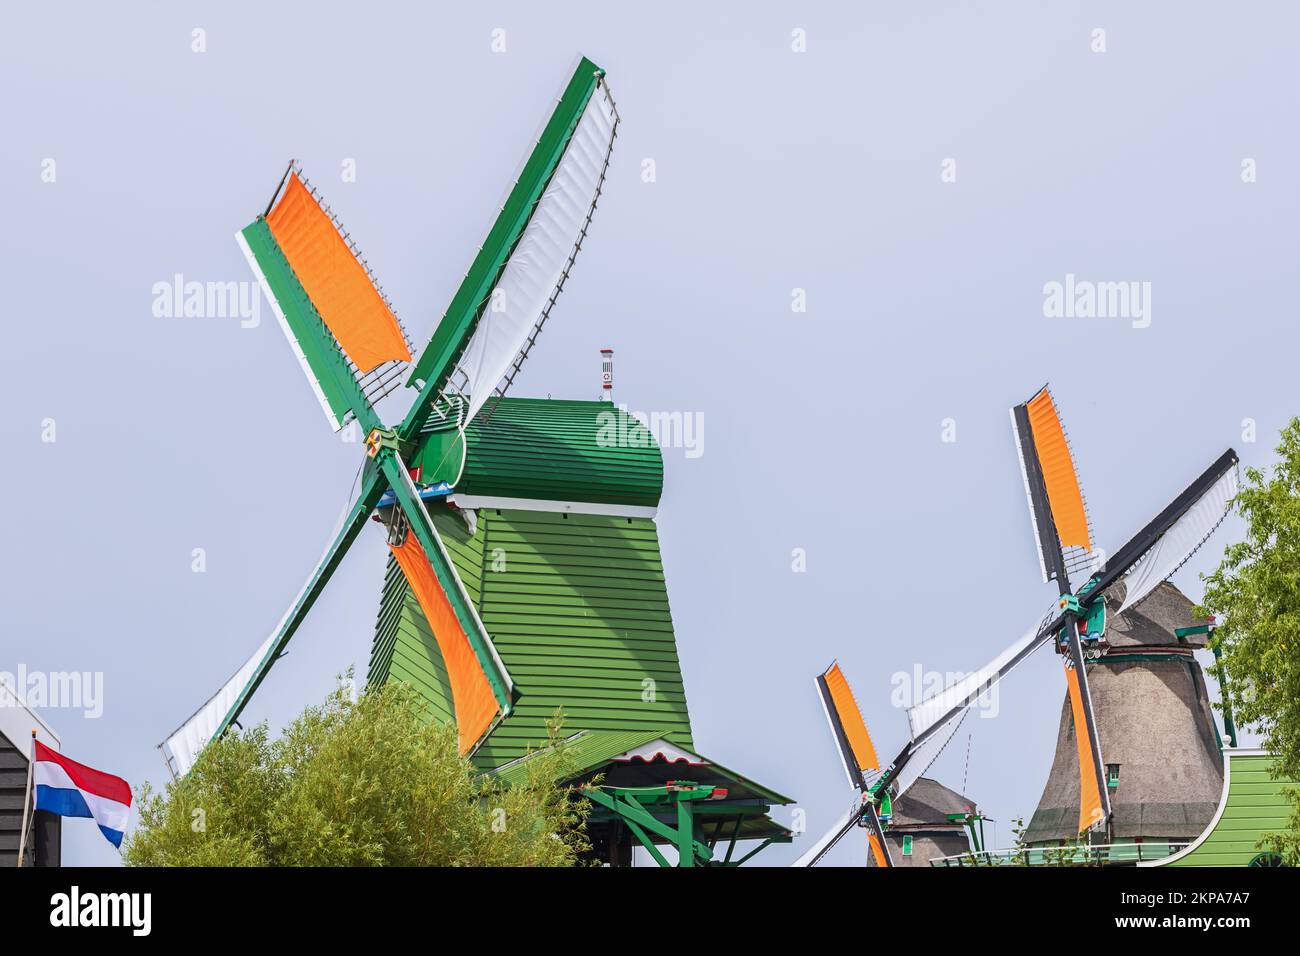 Serie de molinos de viento a lo largo del río Zaan en Zaanse Schans en Zaandam. Las cuchillas del molinillo muestran algo de movimiento desenfocado Foto de stock